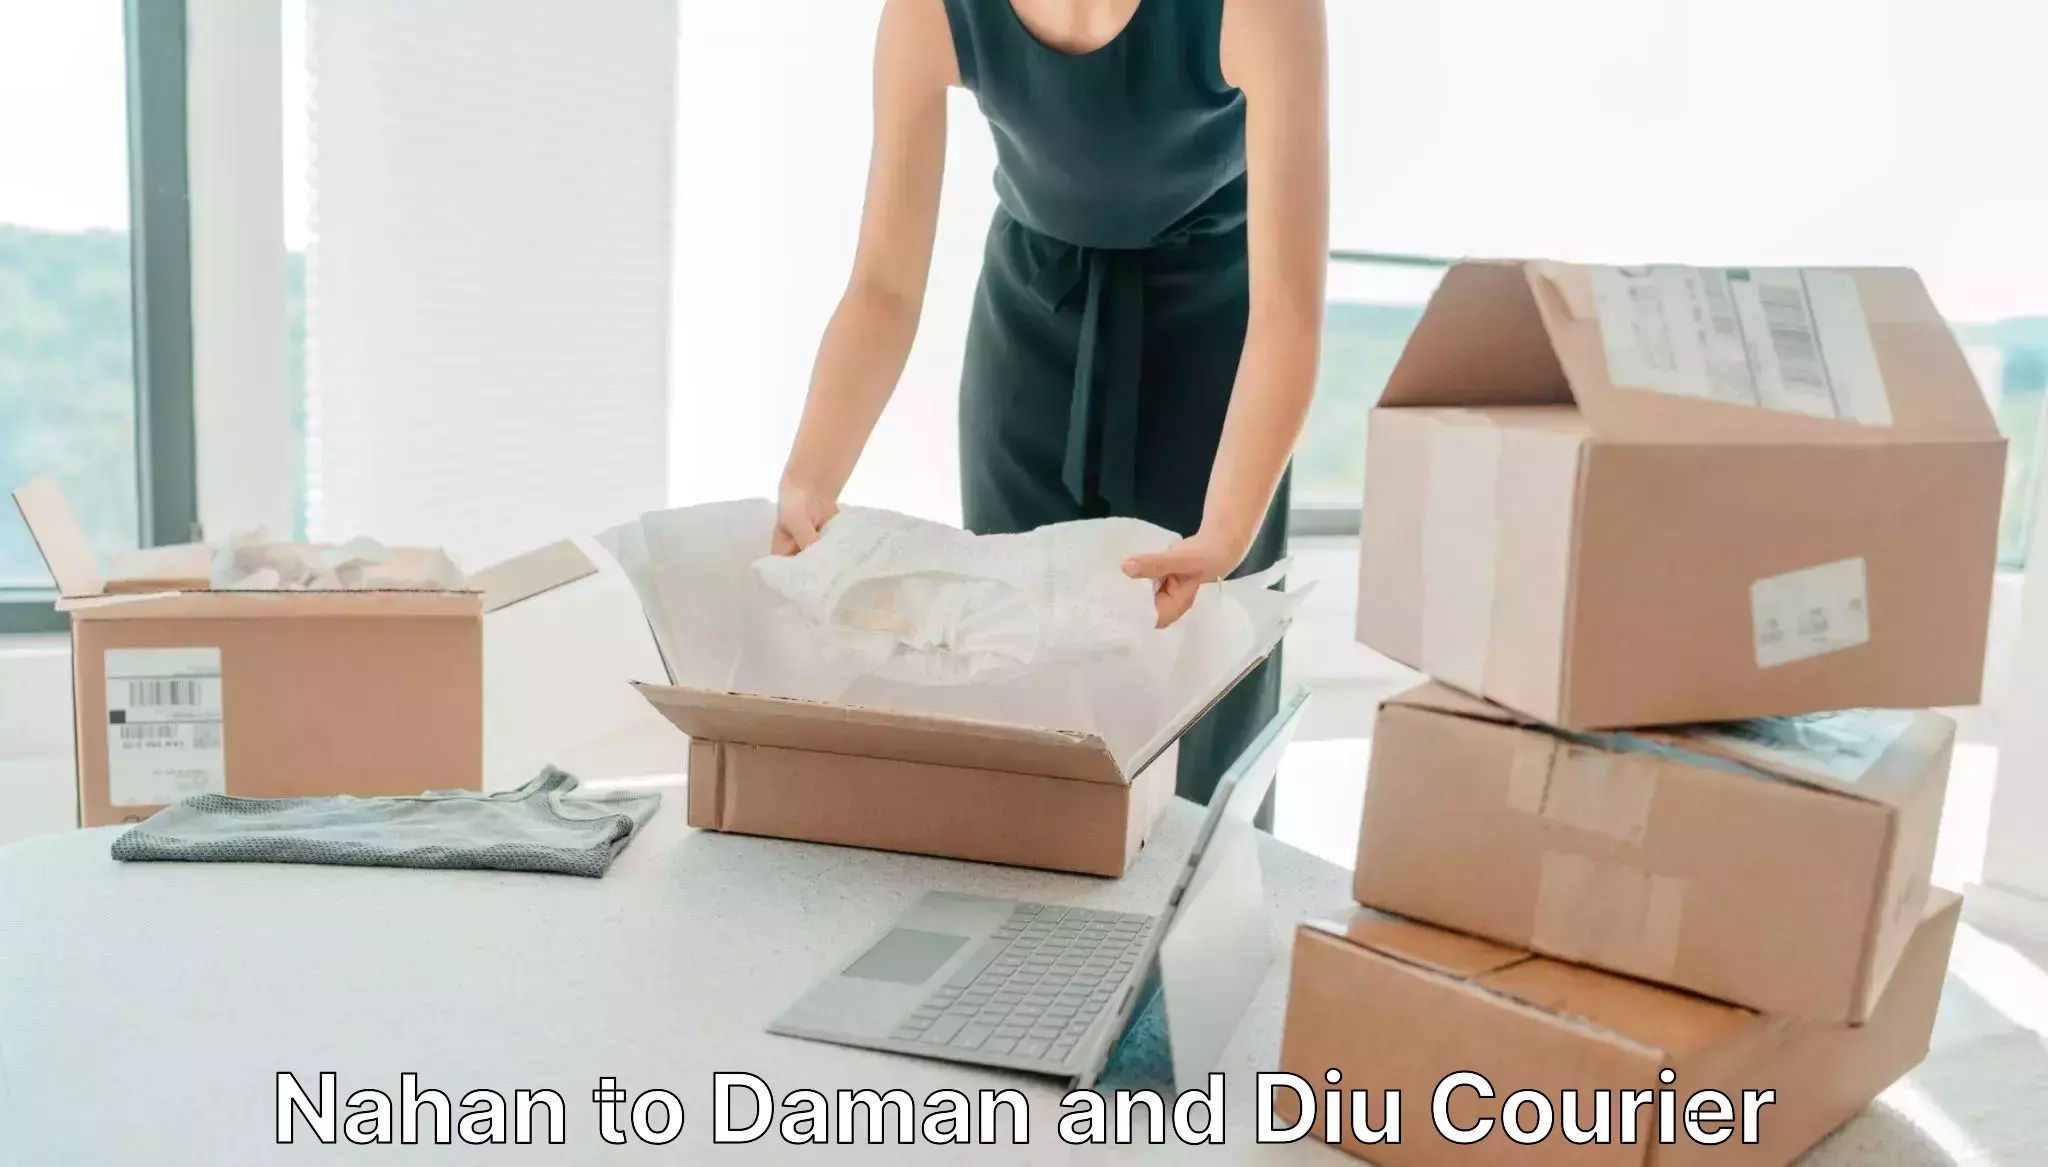 Express logistics providers Nahan to Daman and Diu